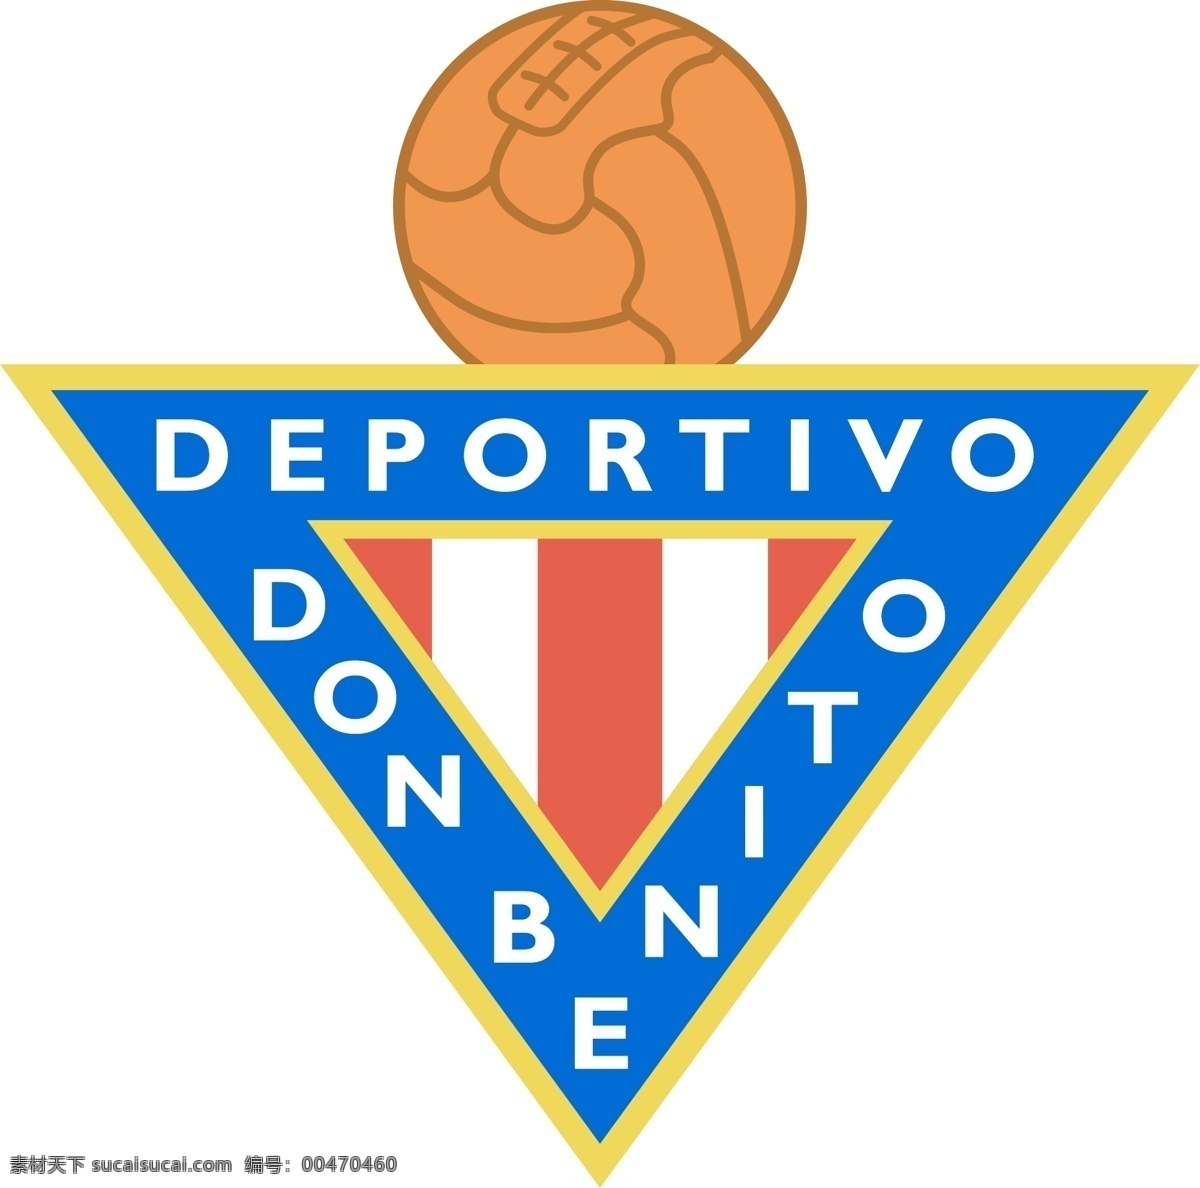 唐 托 体育俱乐部 自由 俱乐部 拉科 鲁尼亚 标志 免费 psd源文件 logo设计